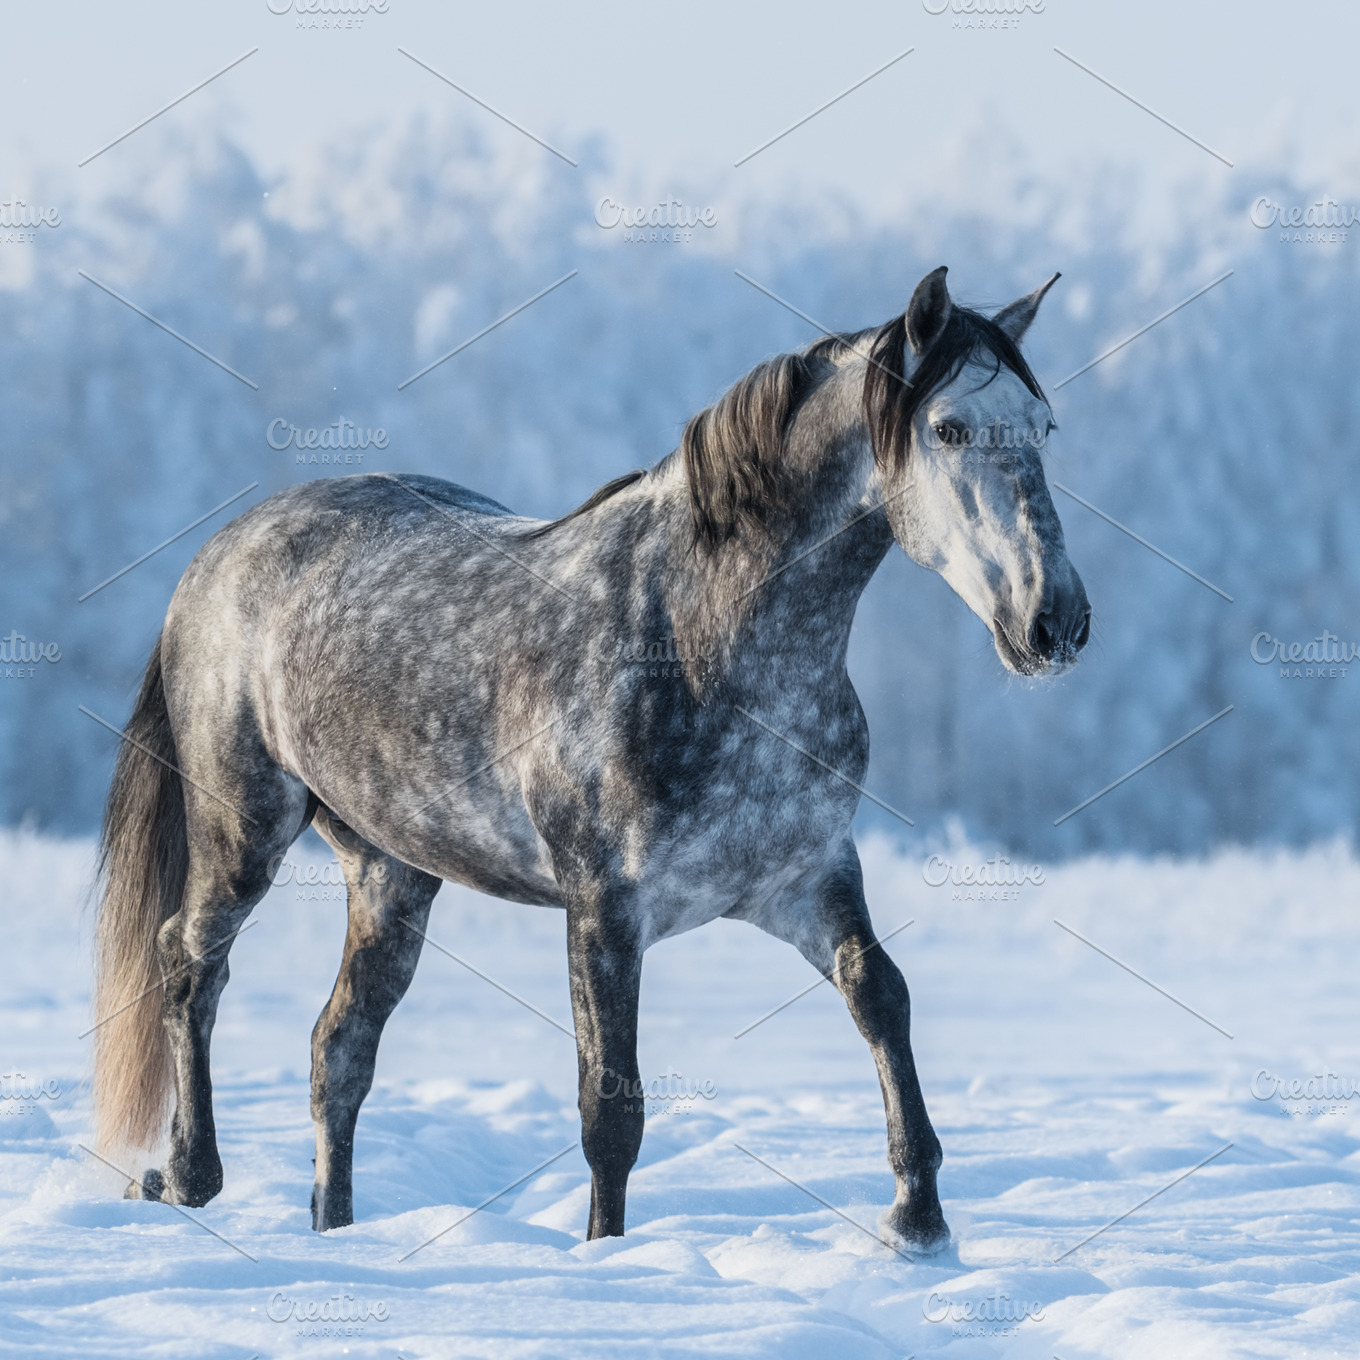 Dapple gray horse ~ Animal Photos ~ Creative Market